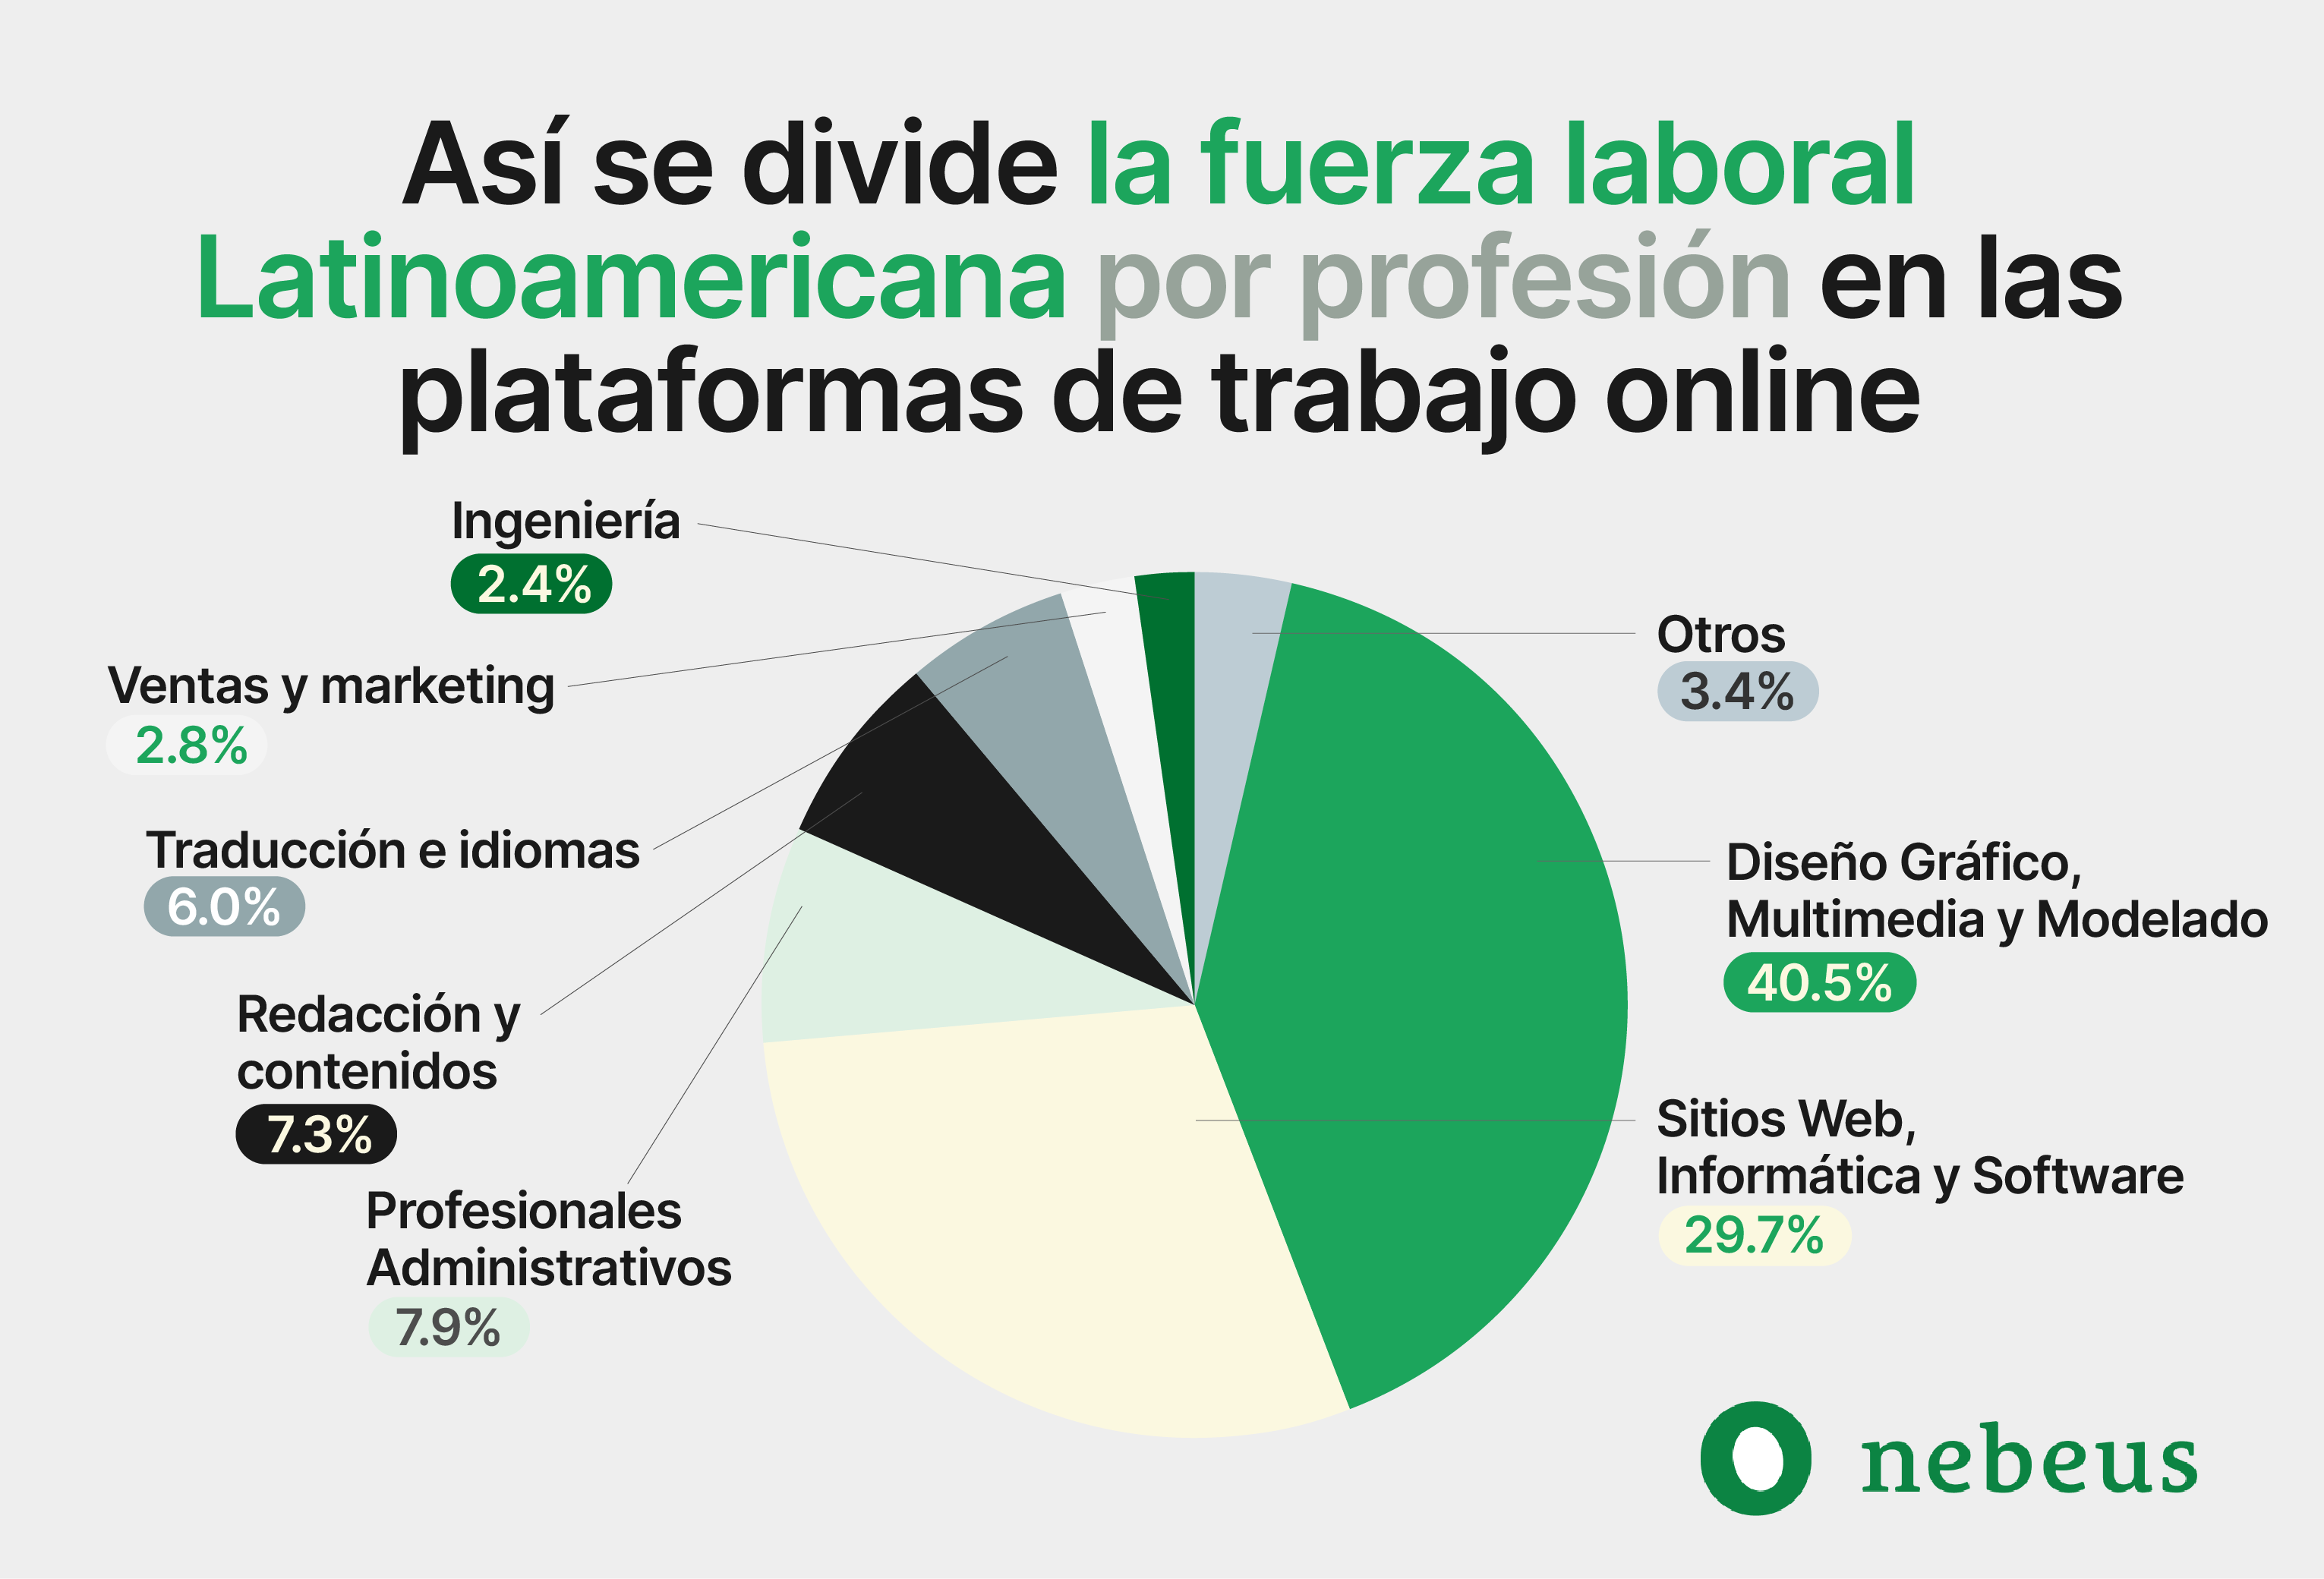 Fuerza laboral Latinoamericana por profesión en plataformas de trabajo online | iMaat, Agencia de Marketing Digital